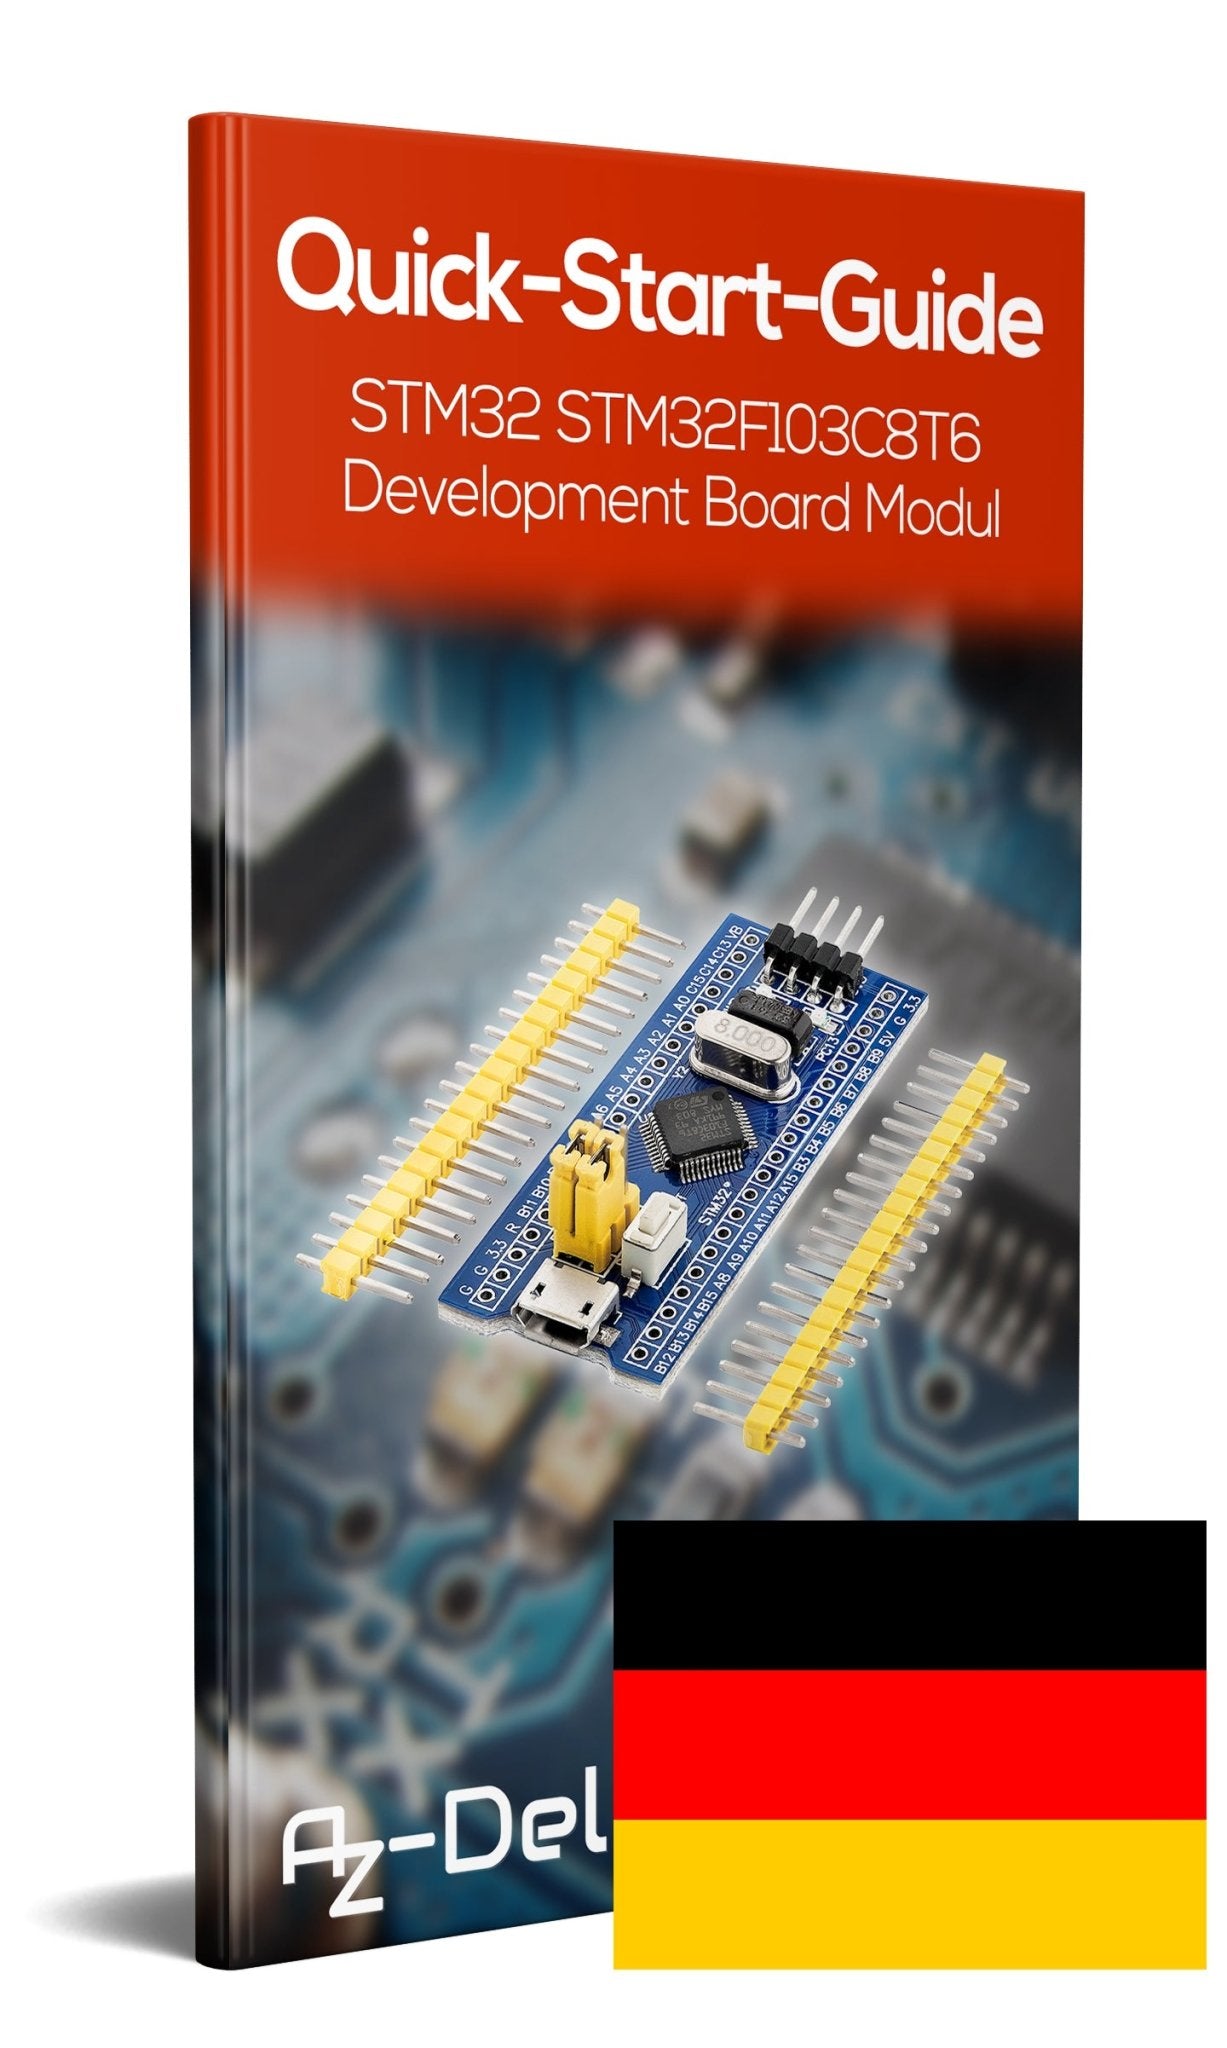 "Bluepill" Development Board Module with ARM Cortex M3 Processor